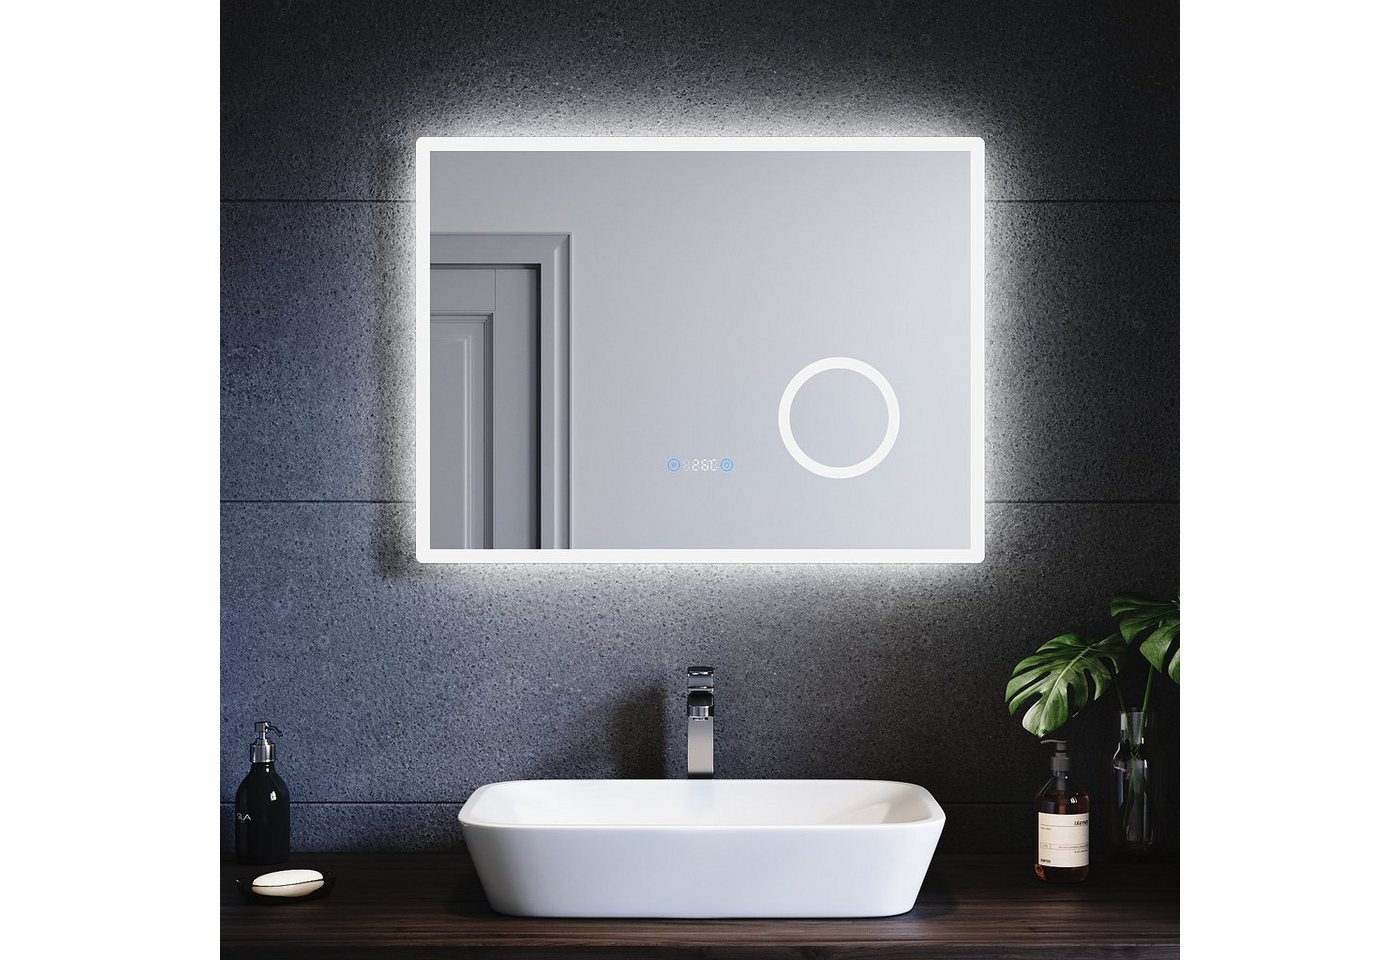 SONNI Badspiegel Badspiegel mit Beleuchtung kaltweiß, 3-facher Vergrößerung, Touch, Uhr, Temperatur, Beschlagfrei, Helligkeit einstellbar, Badezimmer, IP44 von SONNI